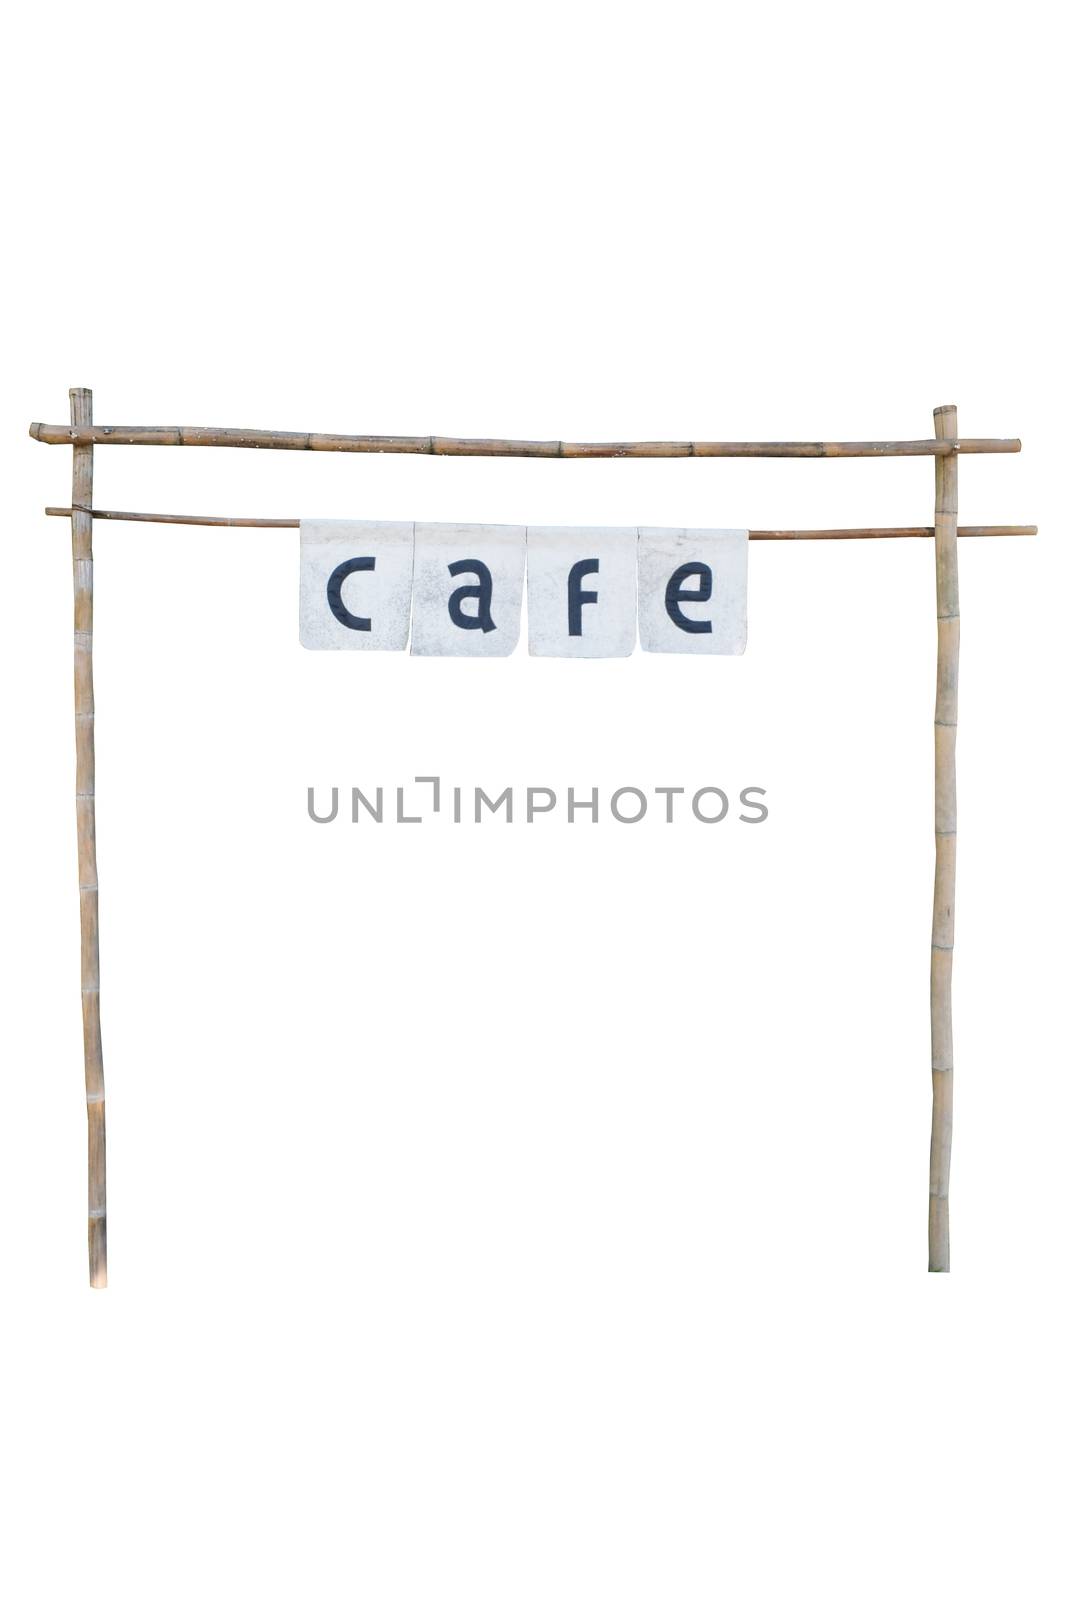 Bamboo cafe entrance on white background